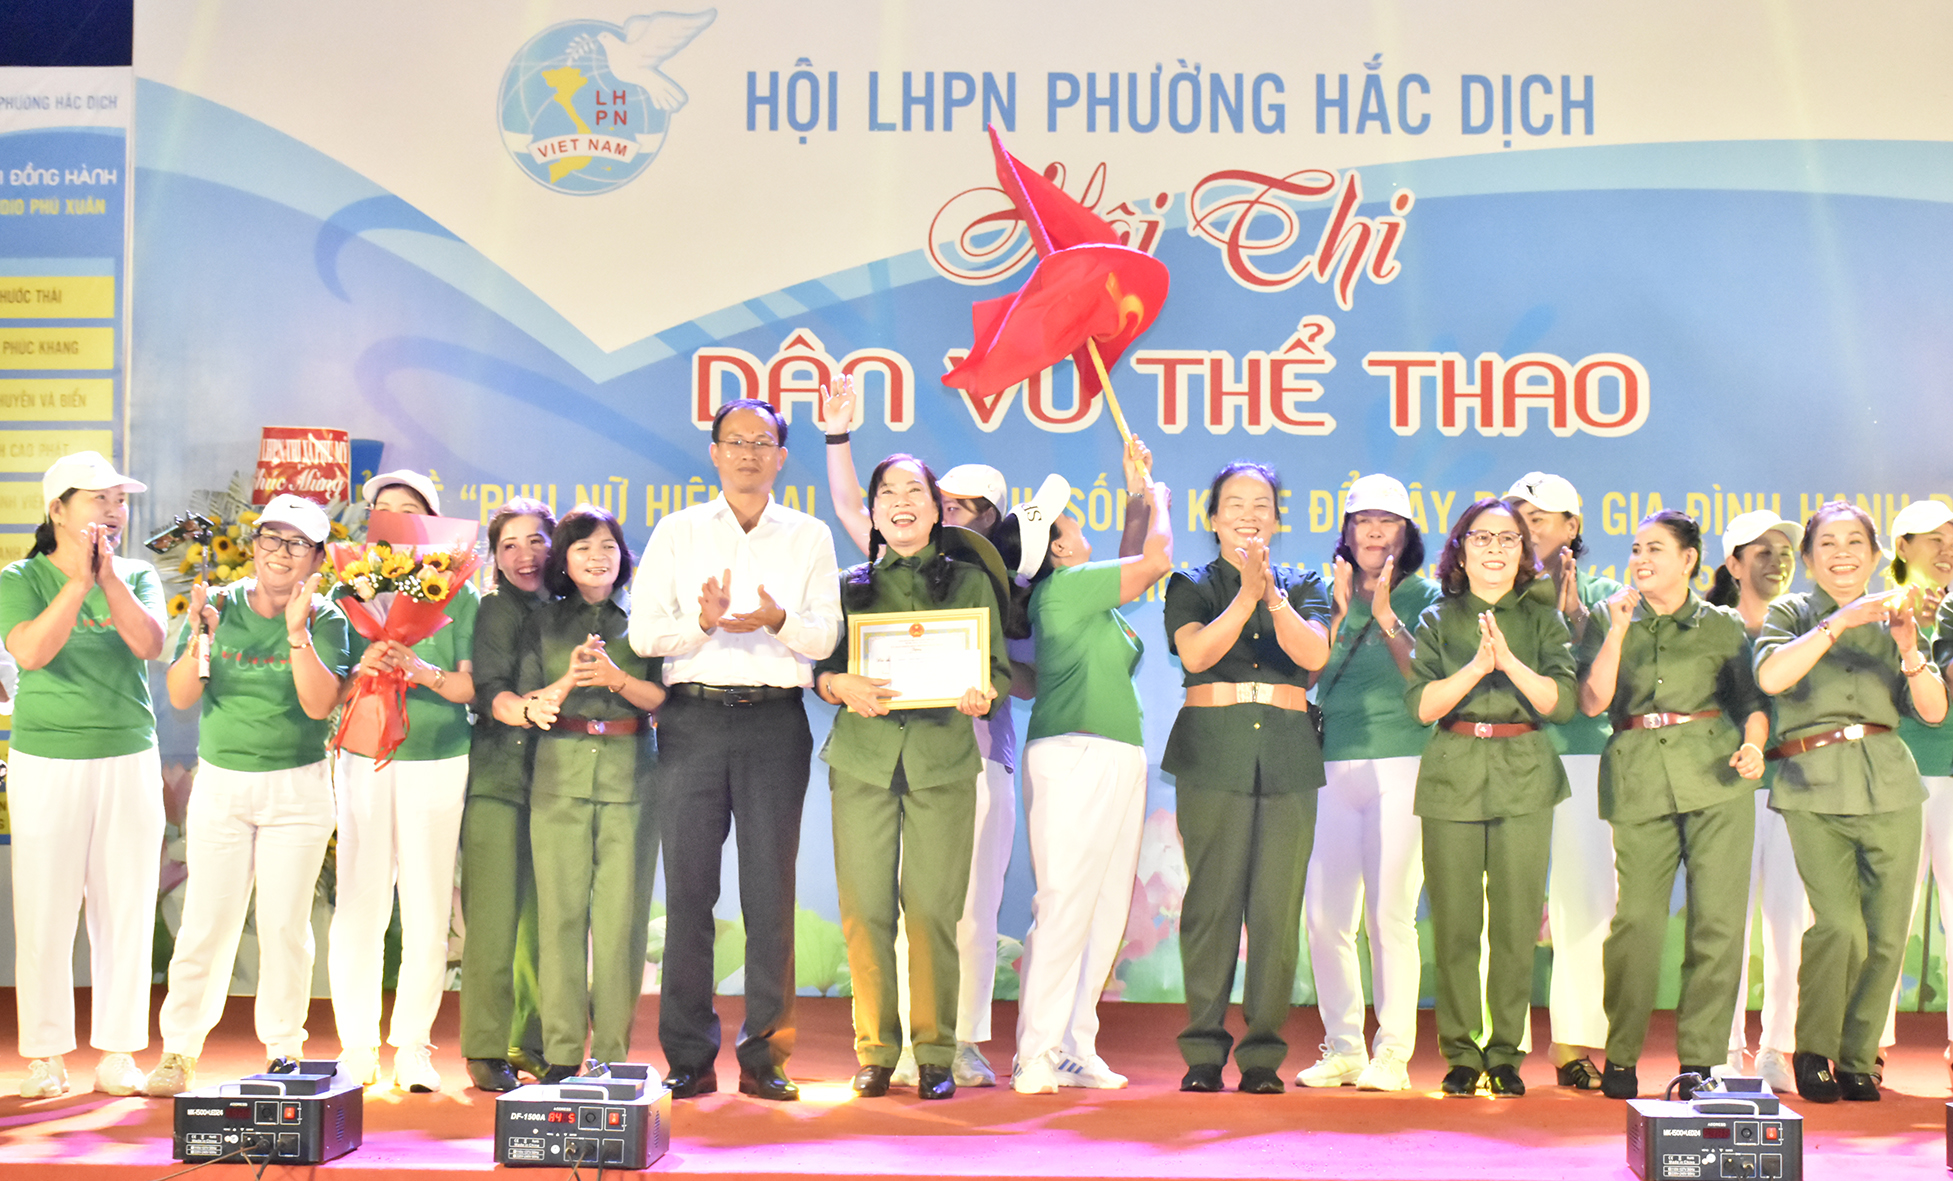 Ông Phan Minh Hợp, Bí thư Đảng ủy phường Hắc Dịch trao giải nhất Hội thi cho khu phố 5 với tiết mục dân vũ 